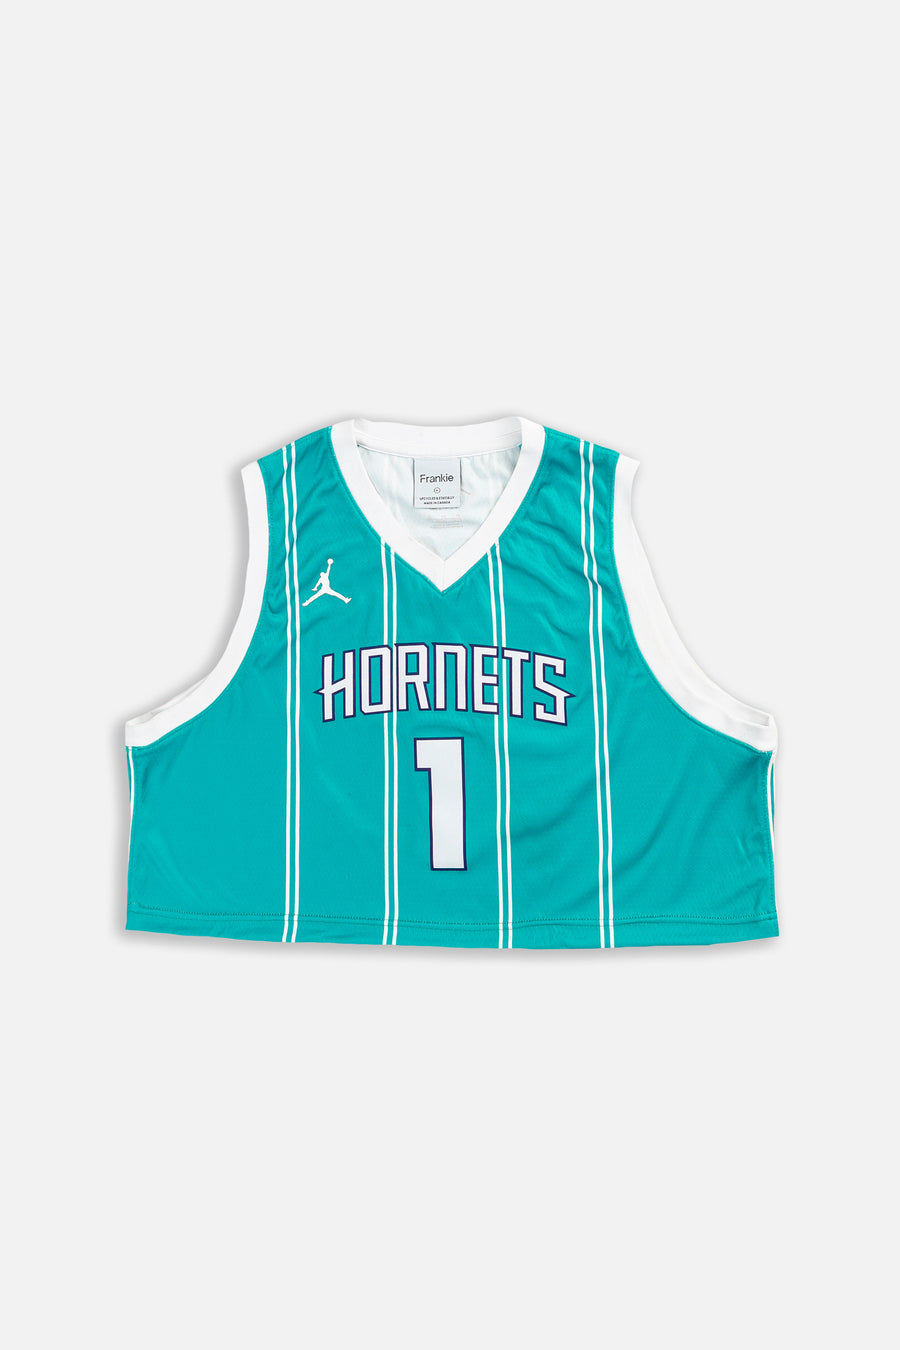 Rework Charlotte Hornets Crop NBA Jersey - L, XL